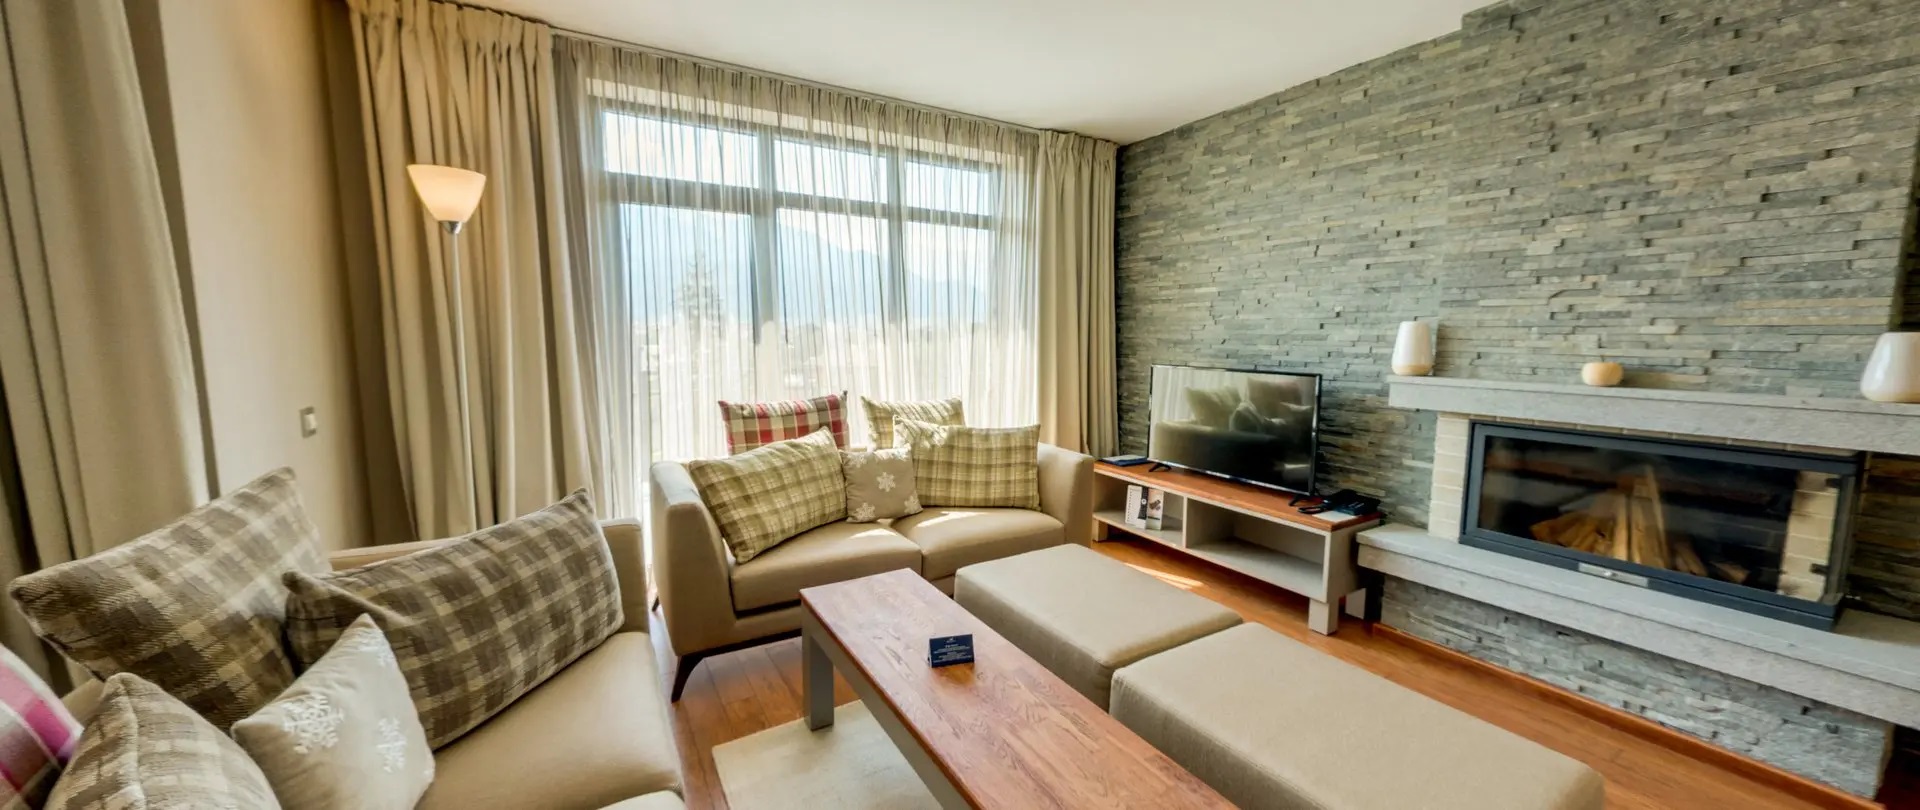 Hotel Ruskovets Resort-Villa comfort with one bedroom.jpg